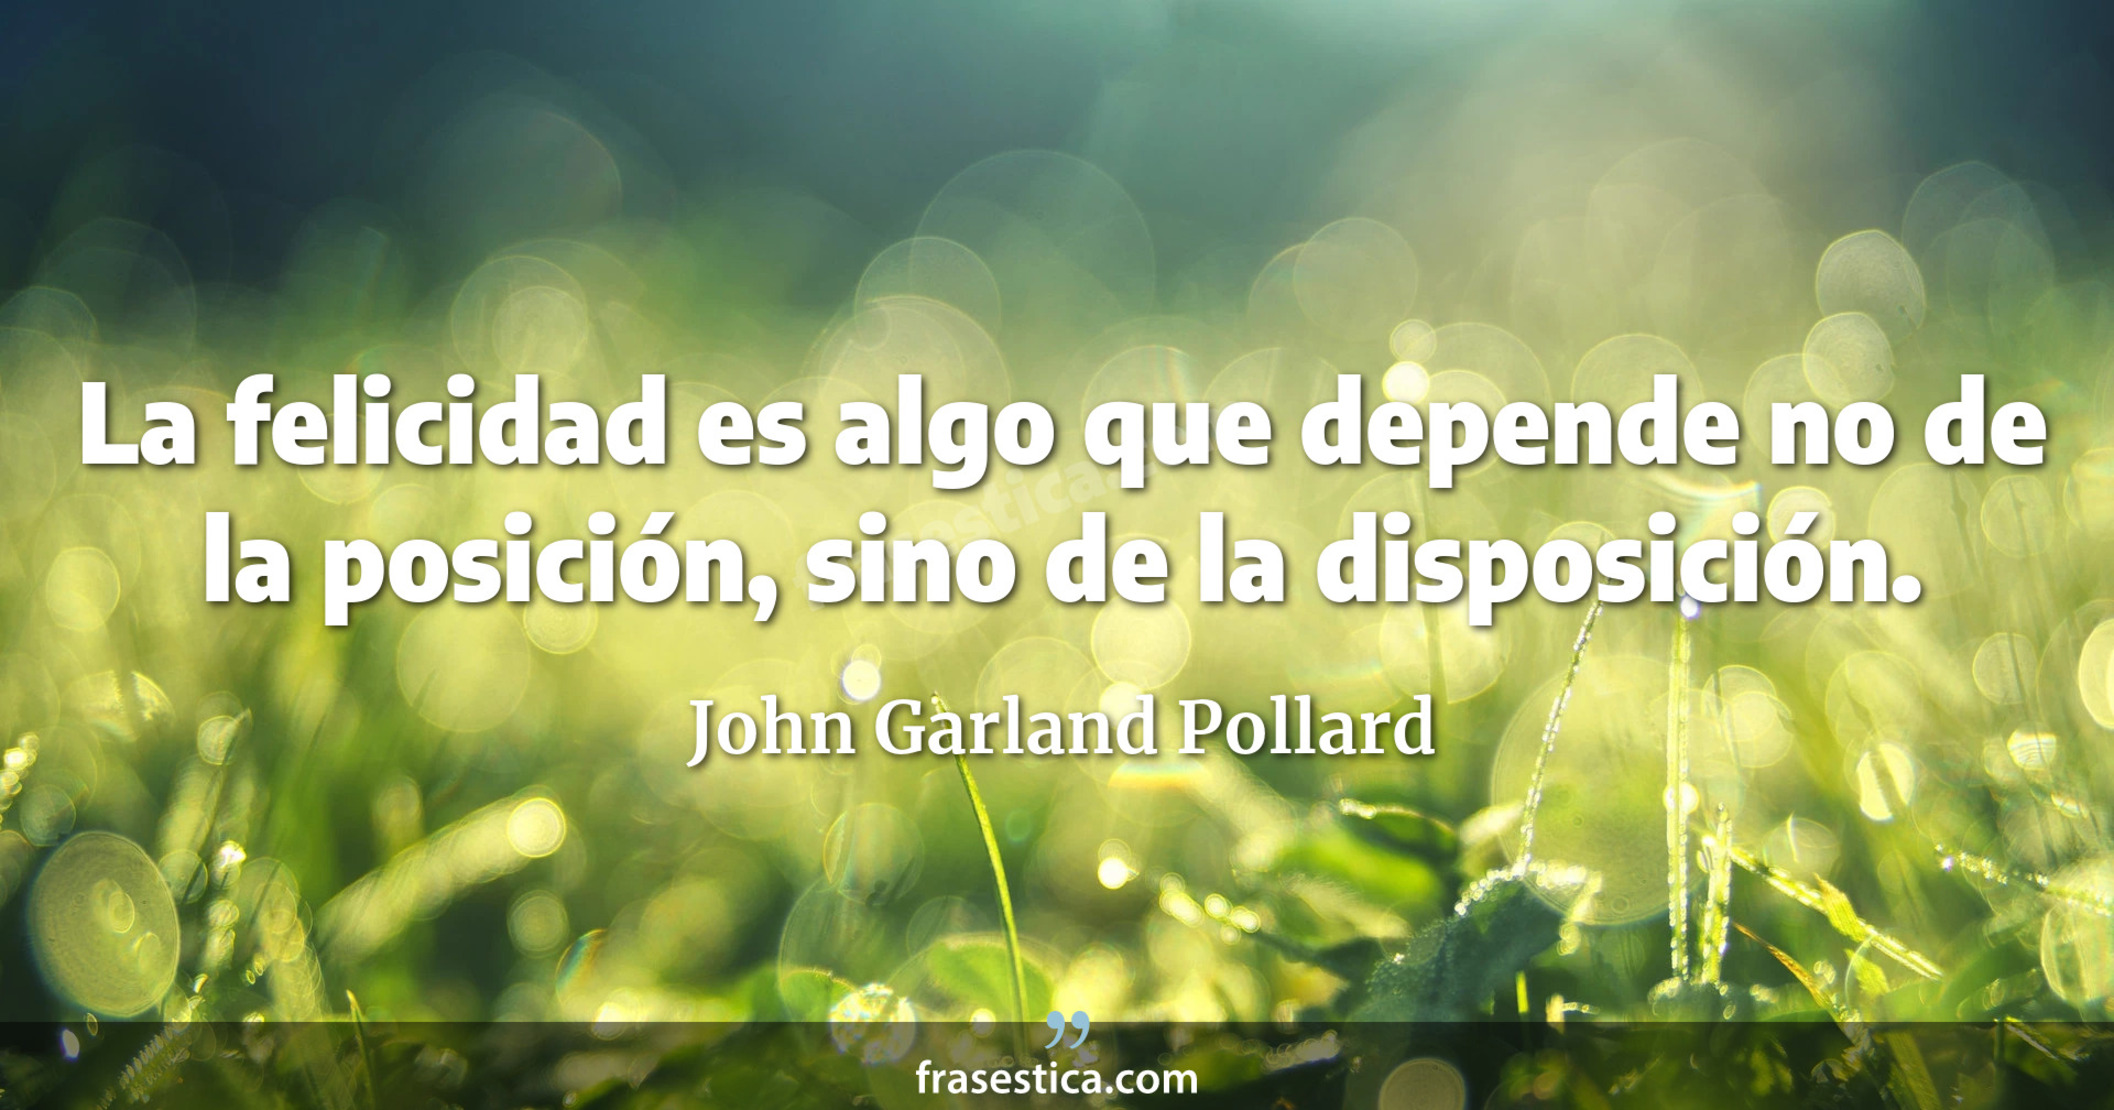 La felicidad es algo que depende no de la posición, sino de la disposición. - John Garland Pollard